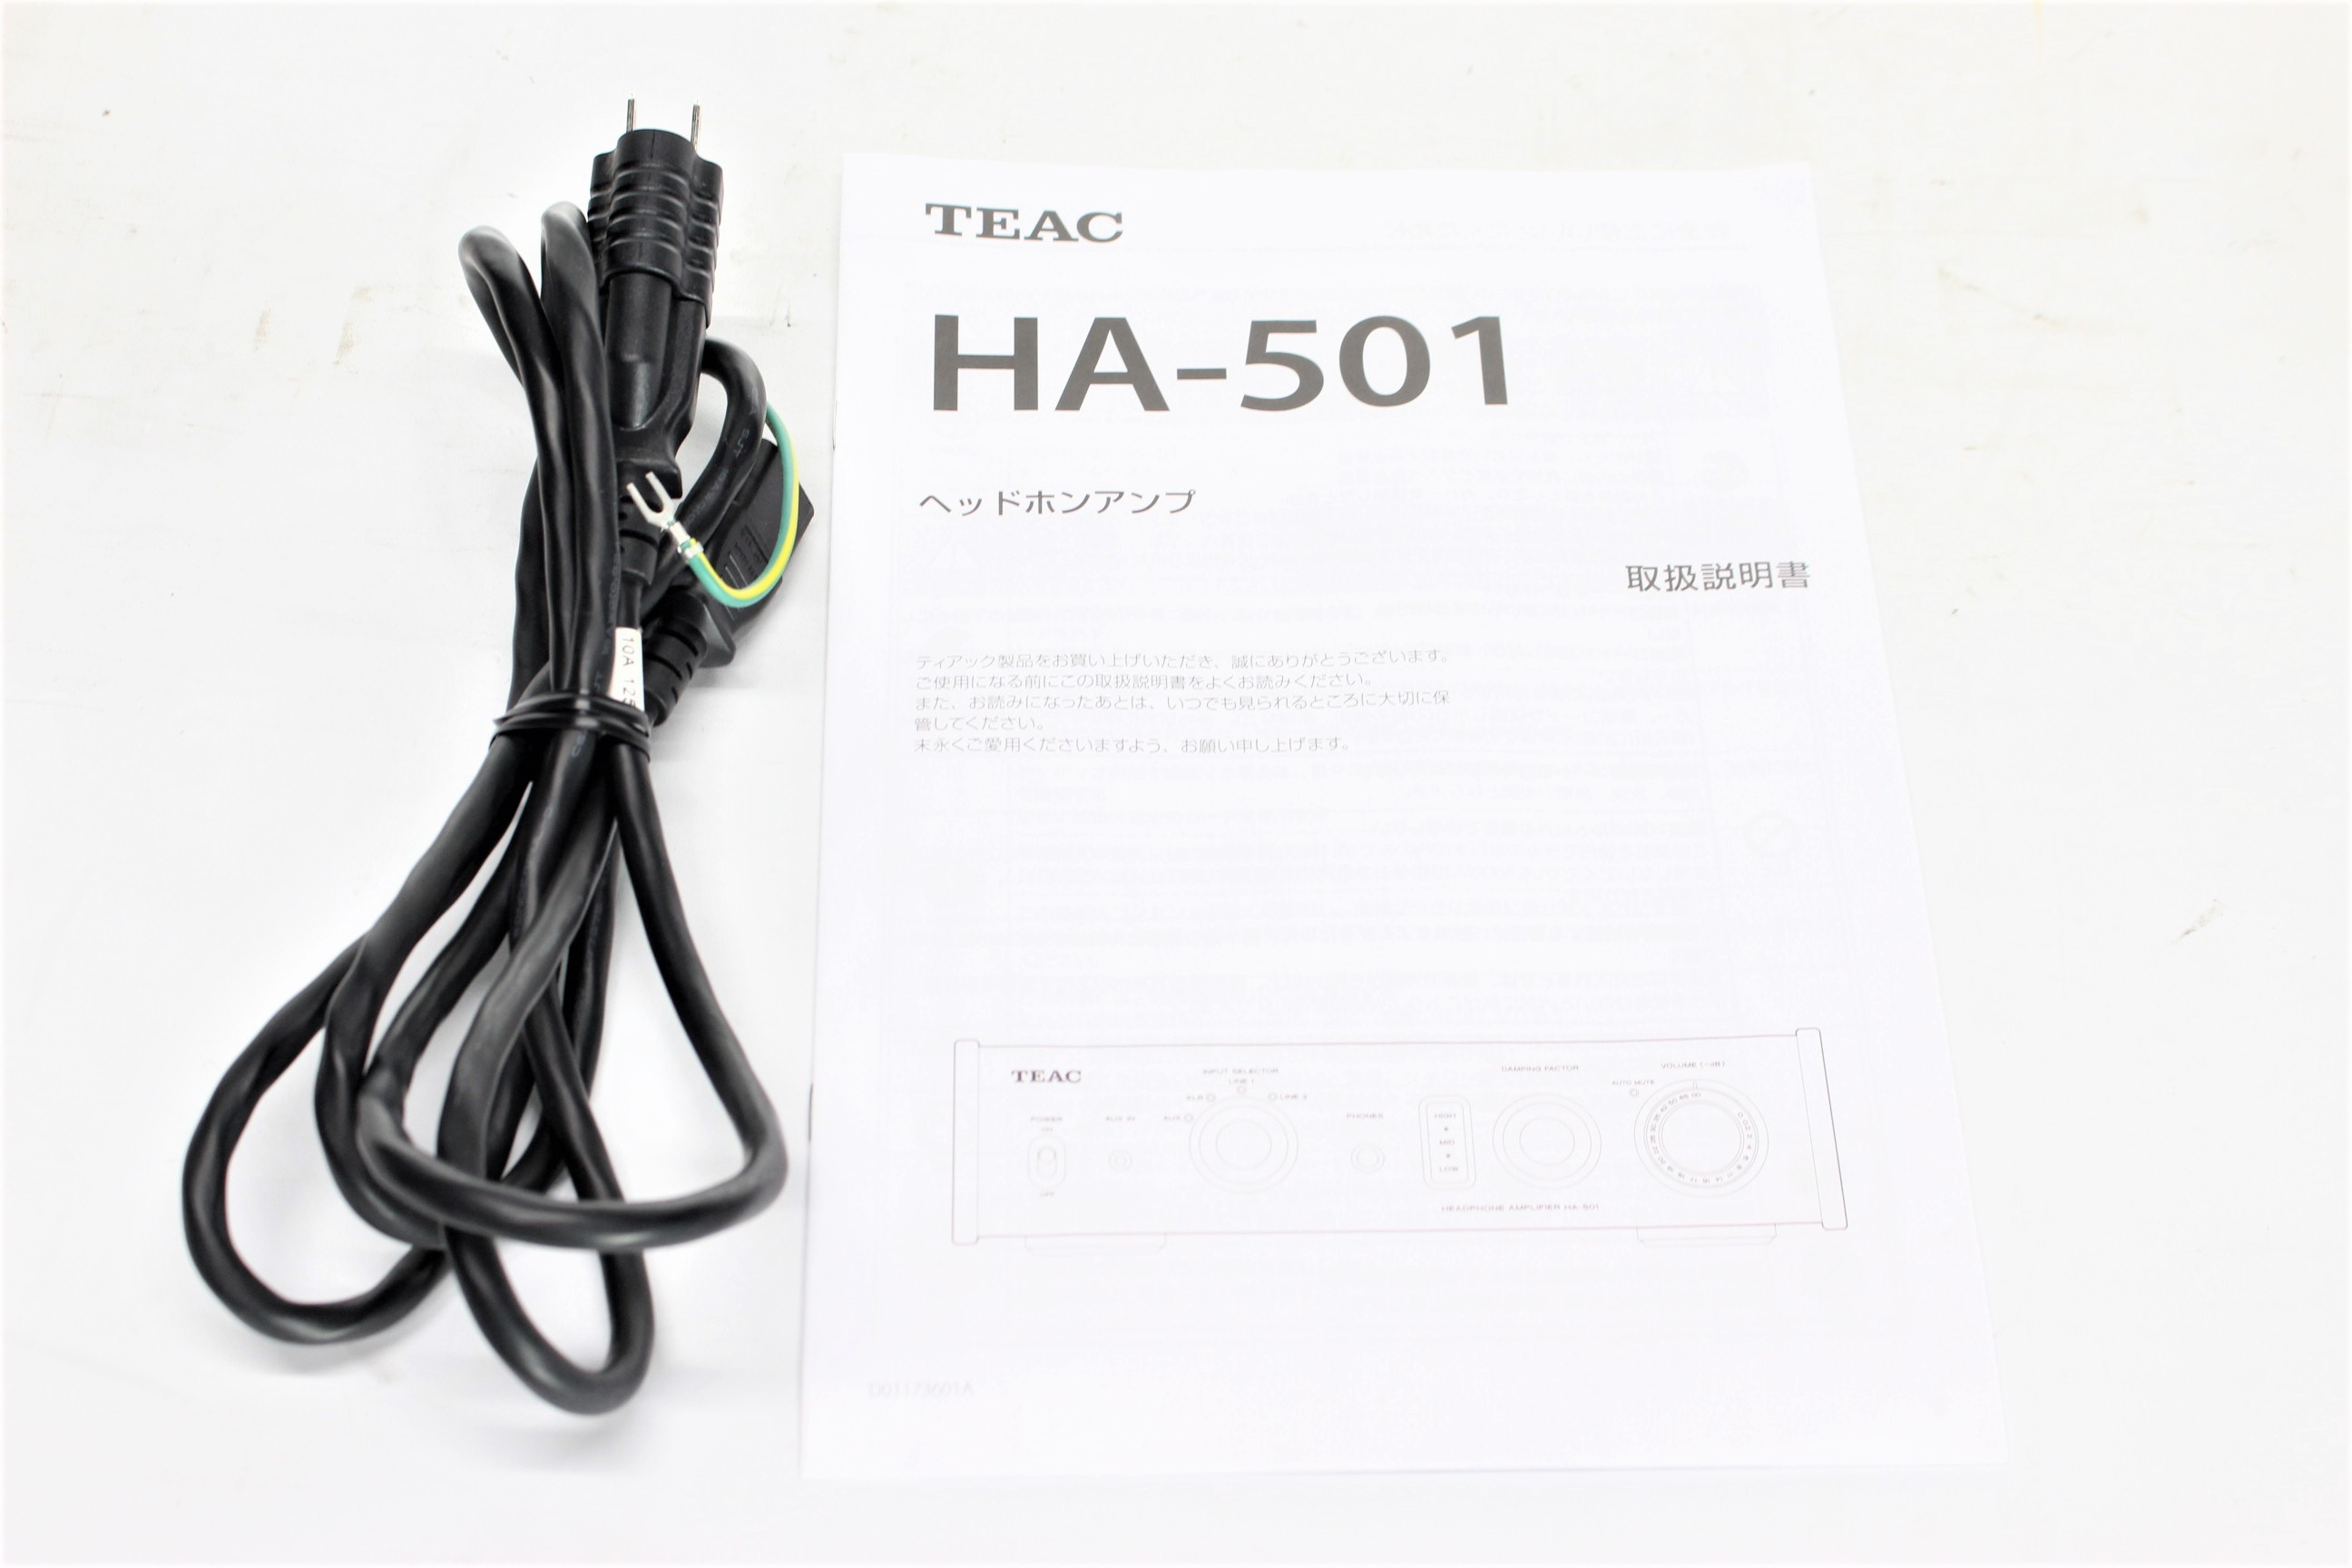 アバックWEB-SHOP / 【中古】TEAC HA-501【コード21-05471】ヘッドフォンアンプ